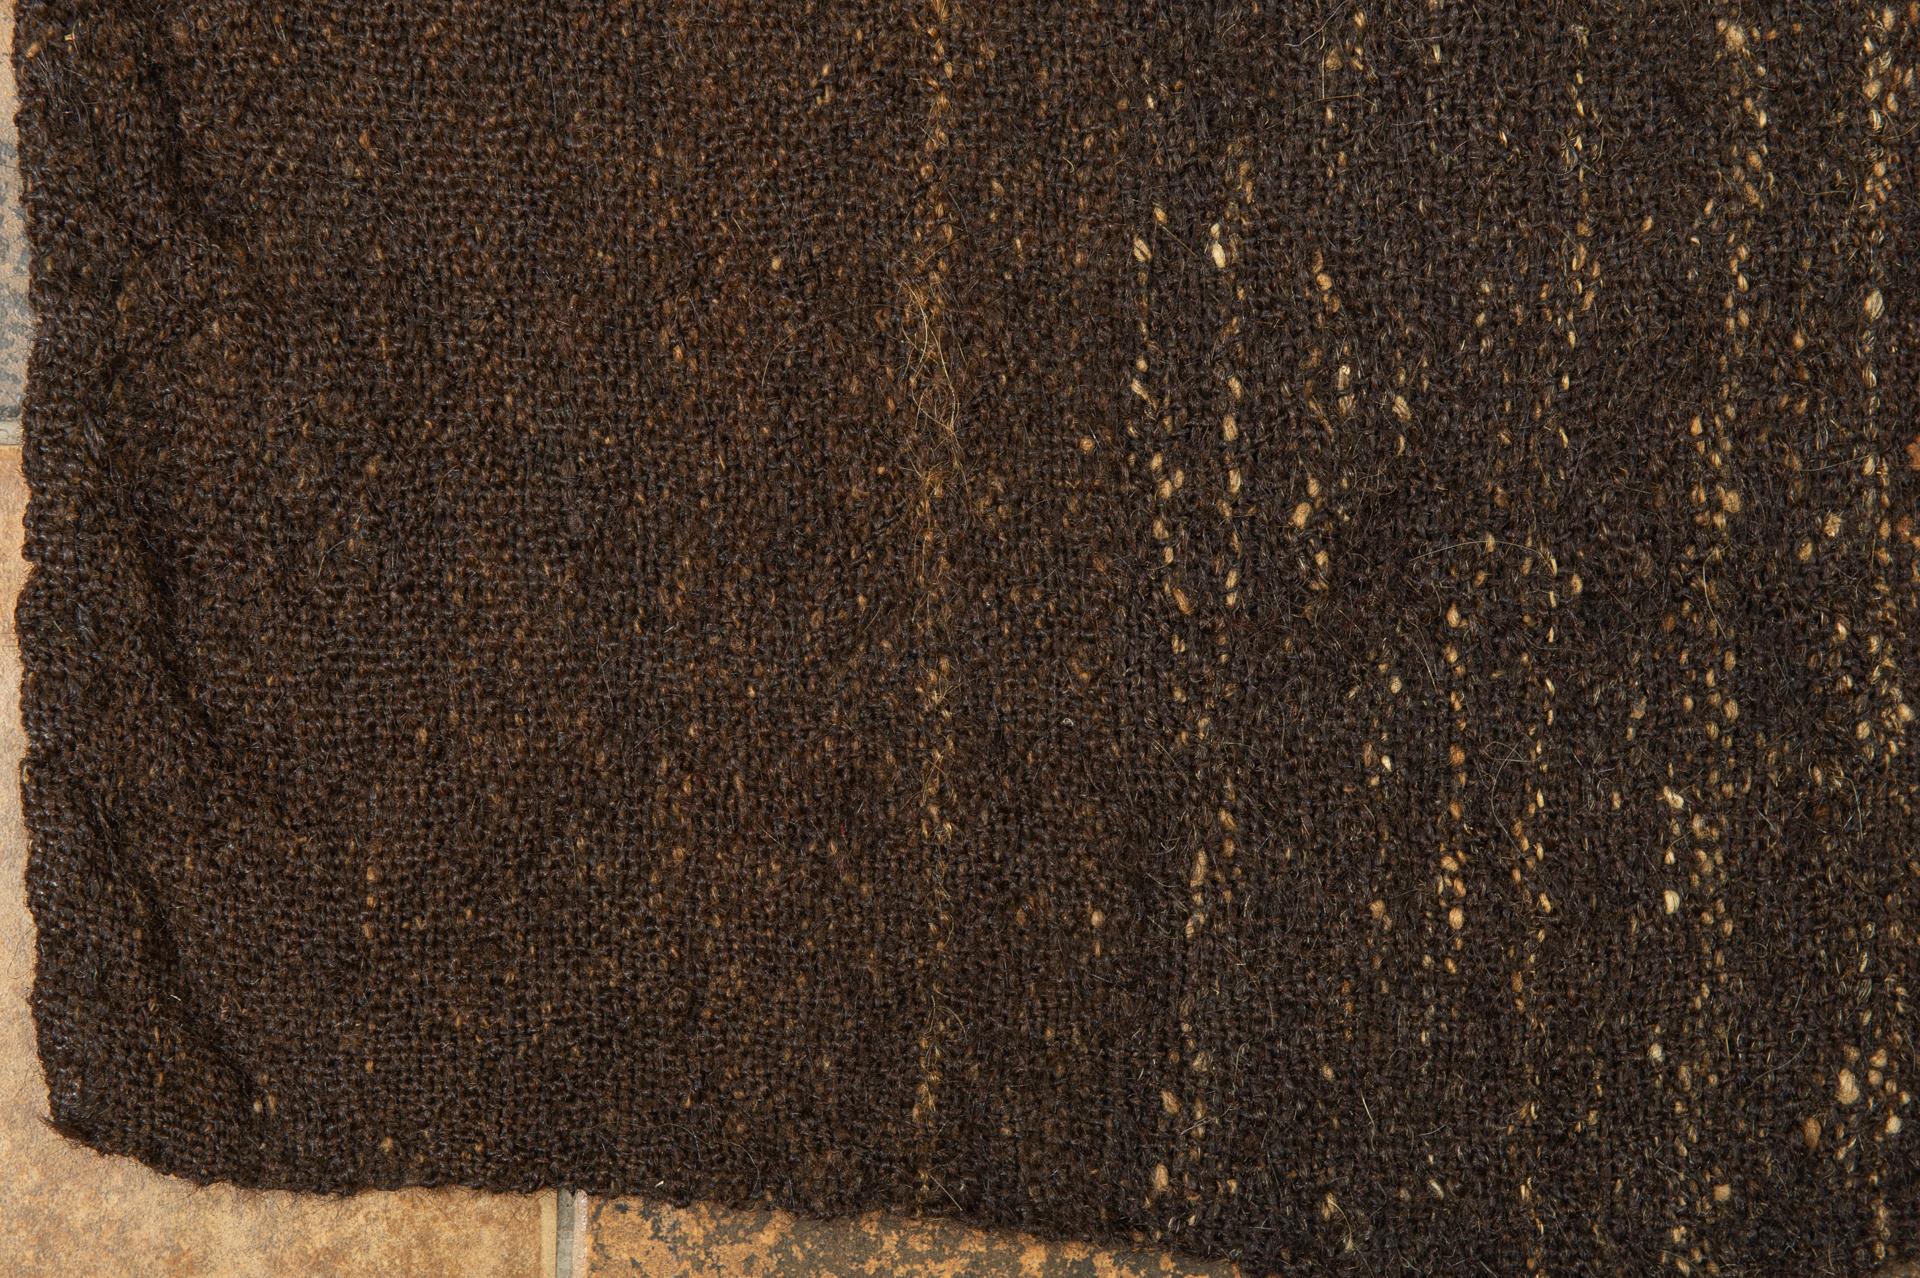 Wool Old Black-Brown Primitive Carpet or Flatwave For Sale